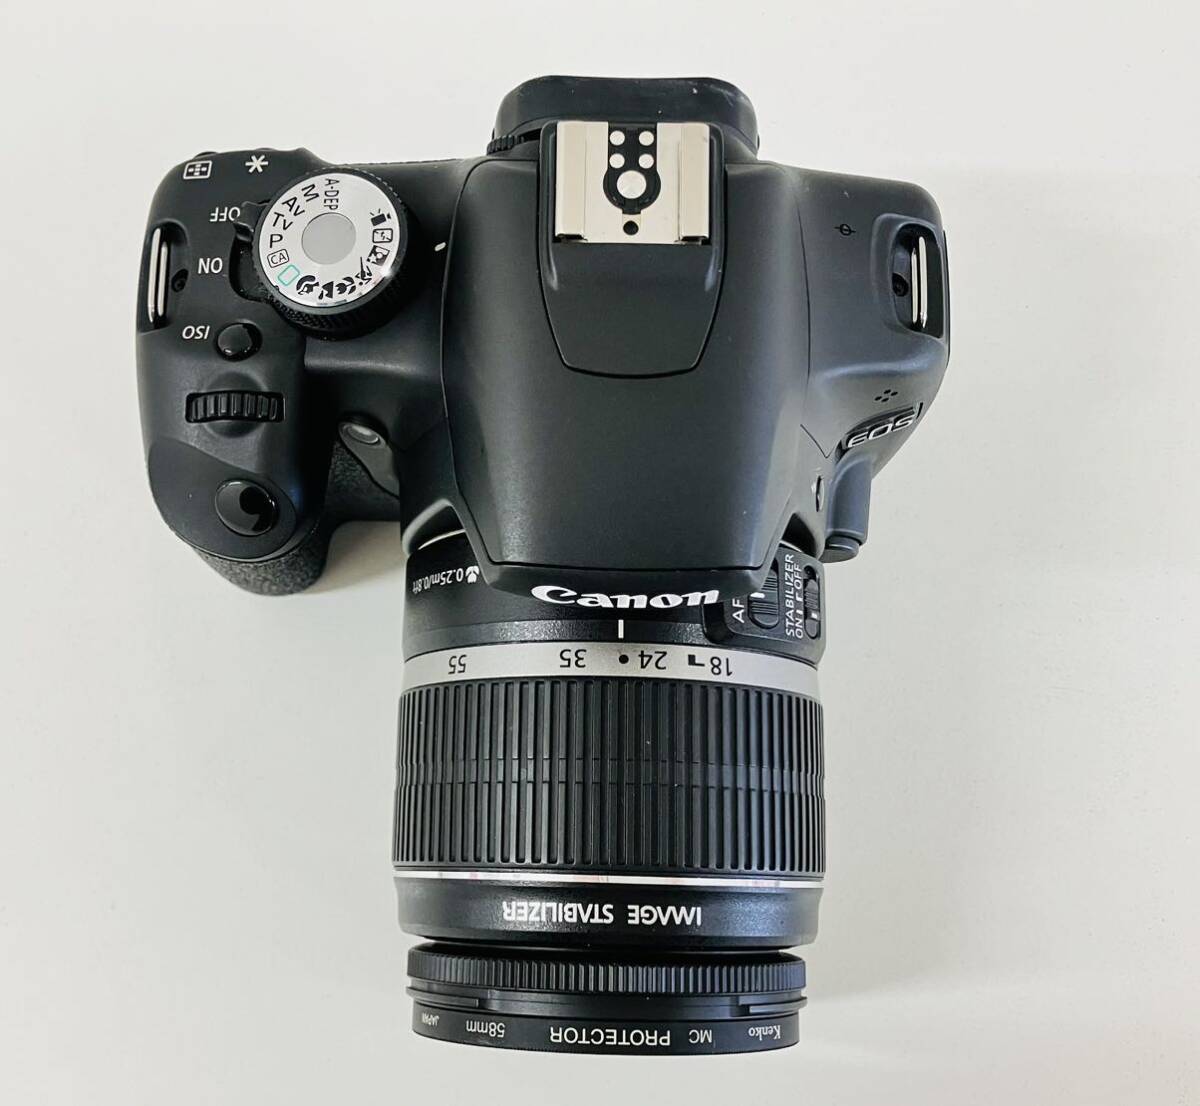 Canon キャノン EOS Kiss X3 デジタル一眼レフカメラ CANON ZOOM LENS EF-S 18-55mm 1:3.5-5.6 IS レンズ プロテクター付 動作未確認の画像2